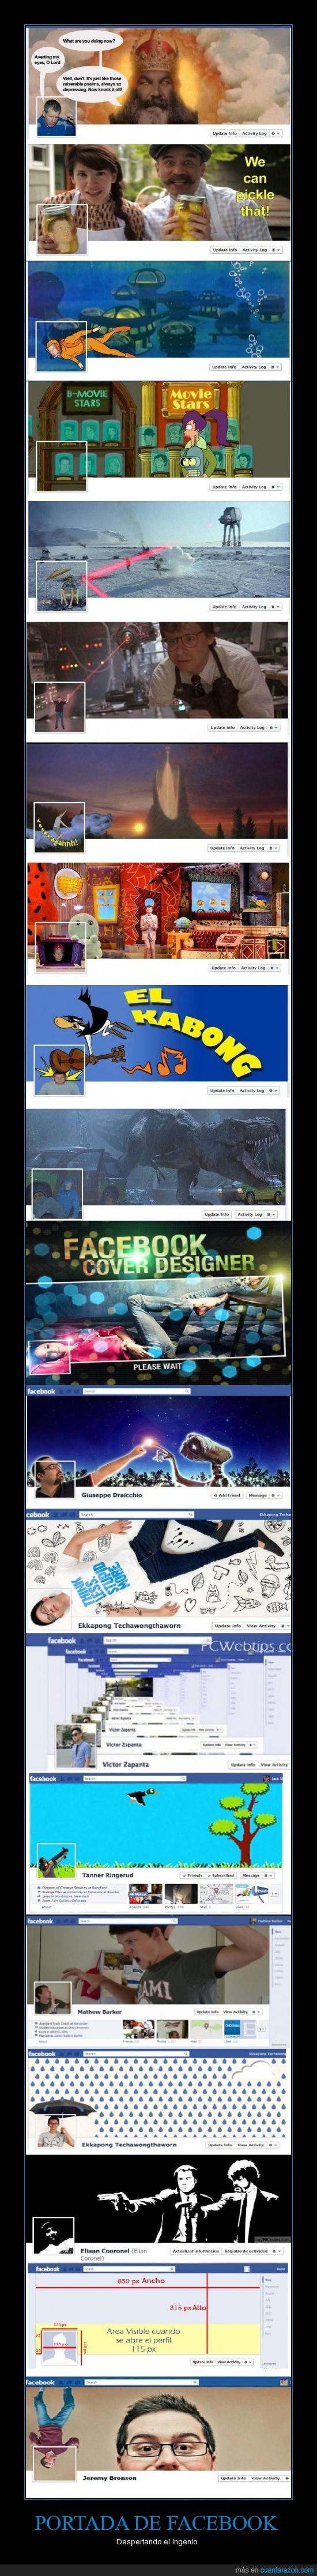 facebook,hombre,ingenio,internet,lol,memes,portada,web